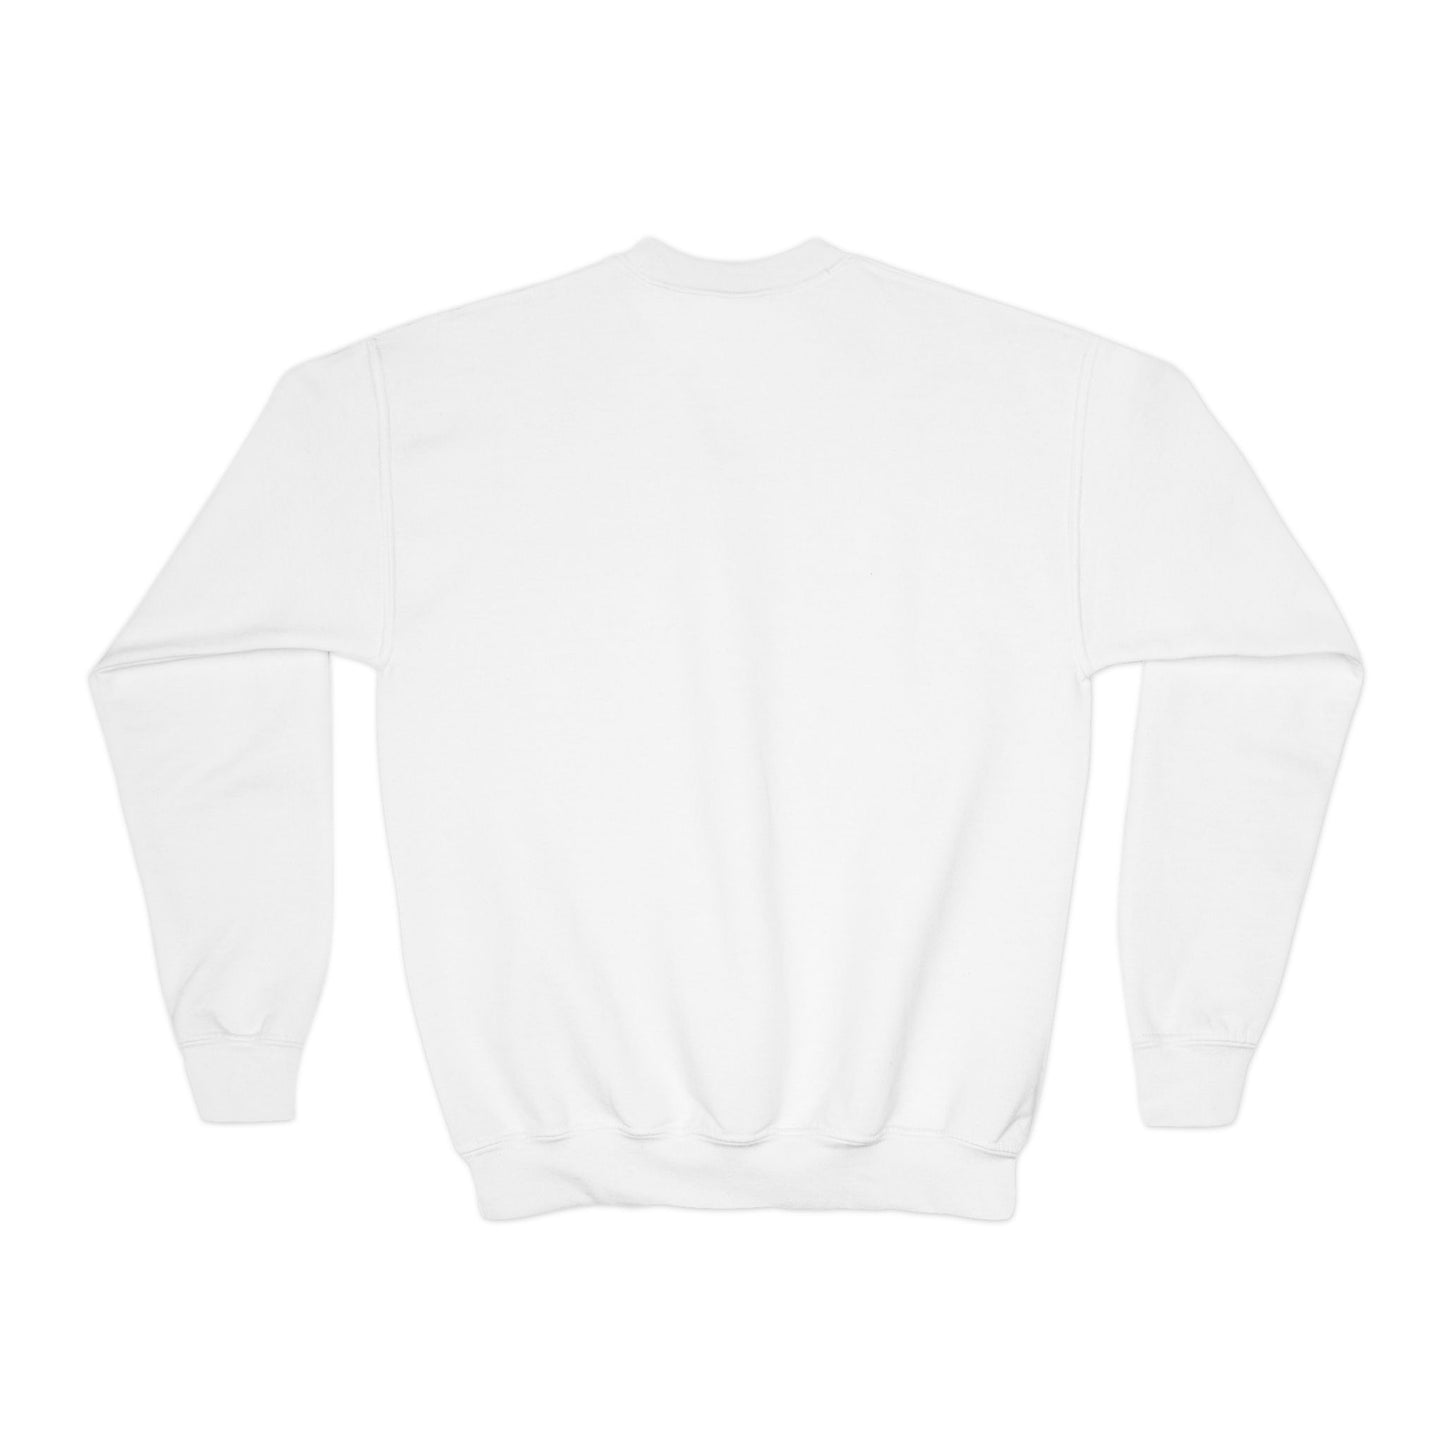 OVOXO Youth Sweatshirt